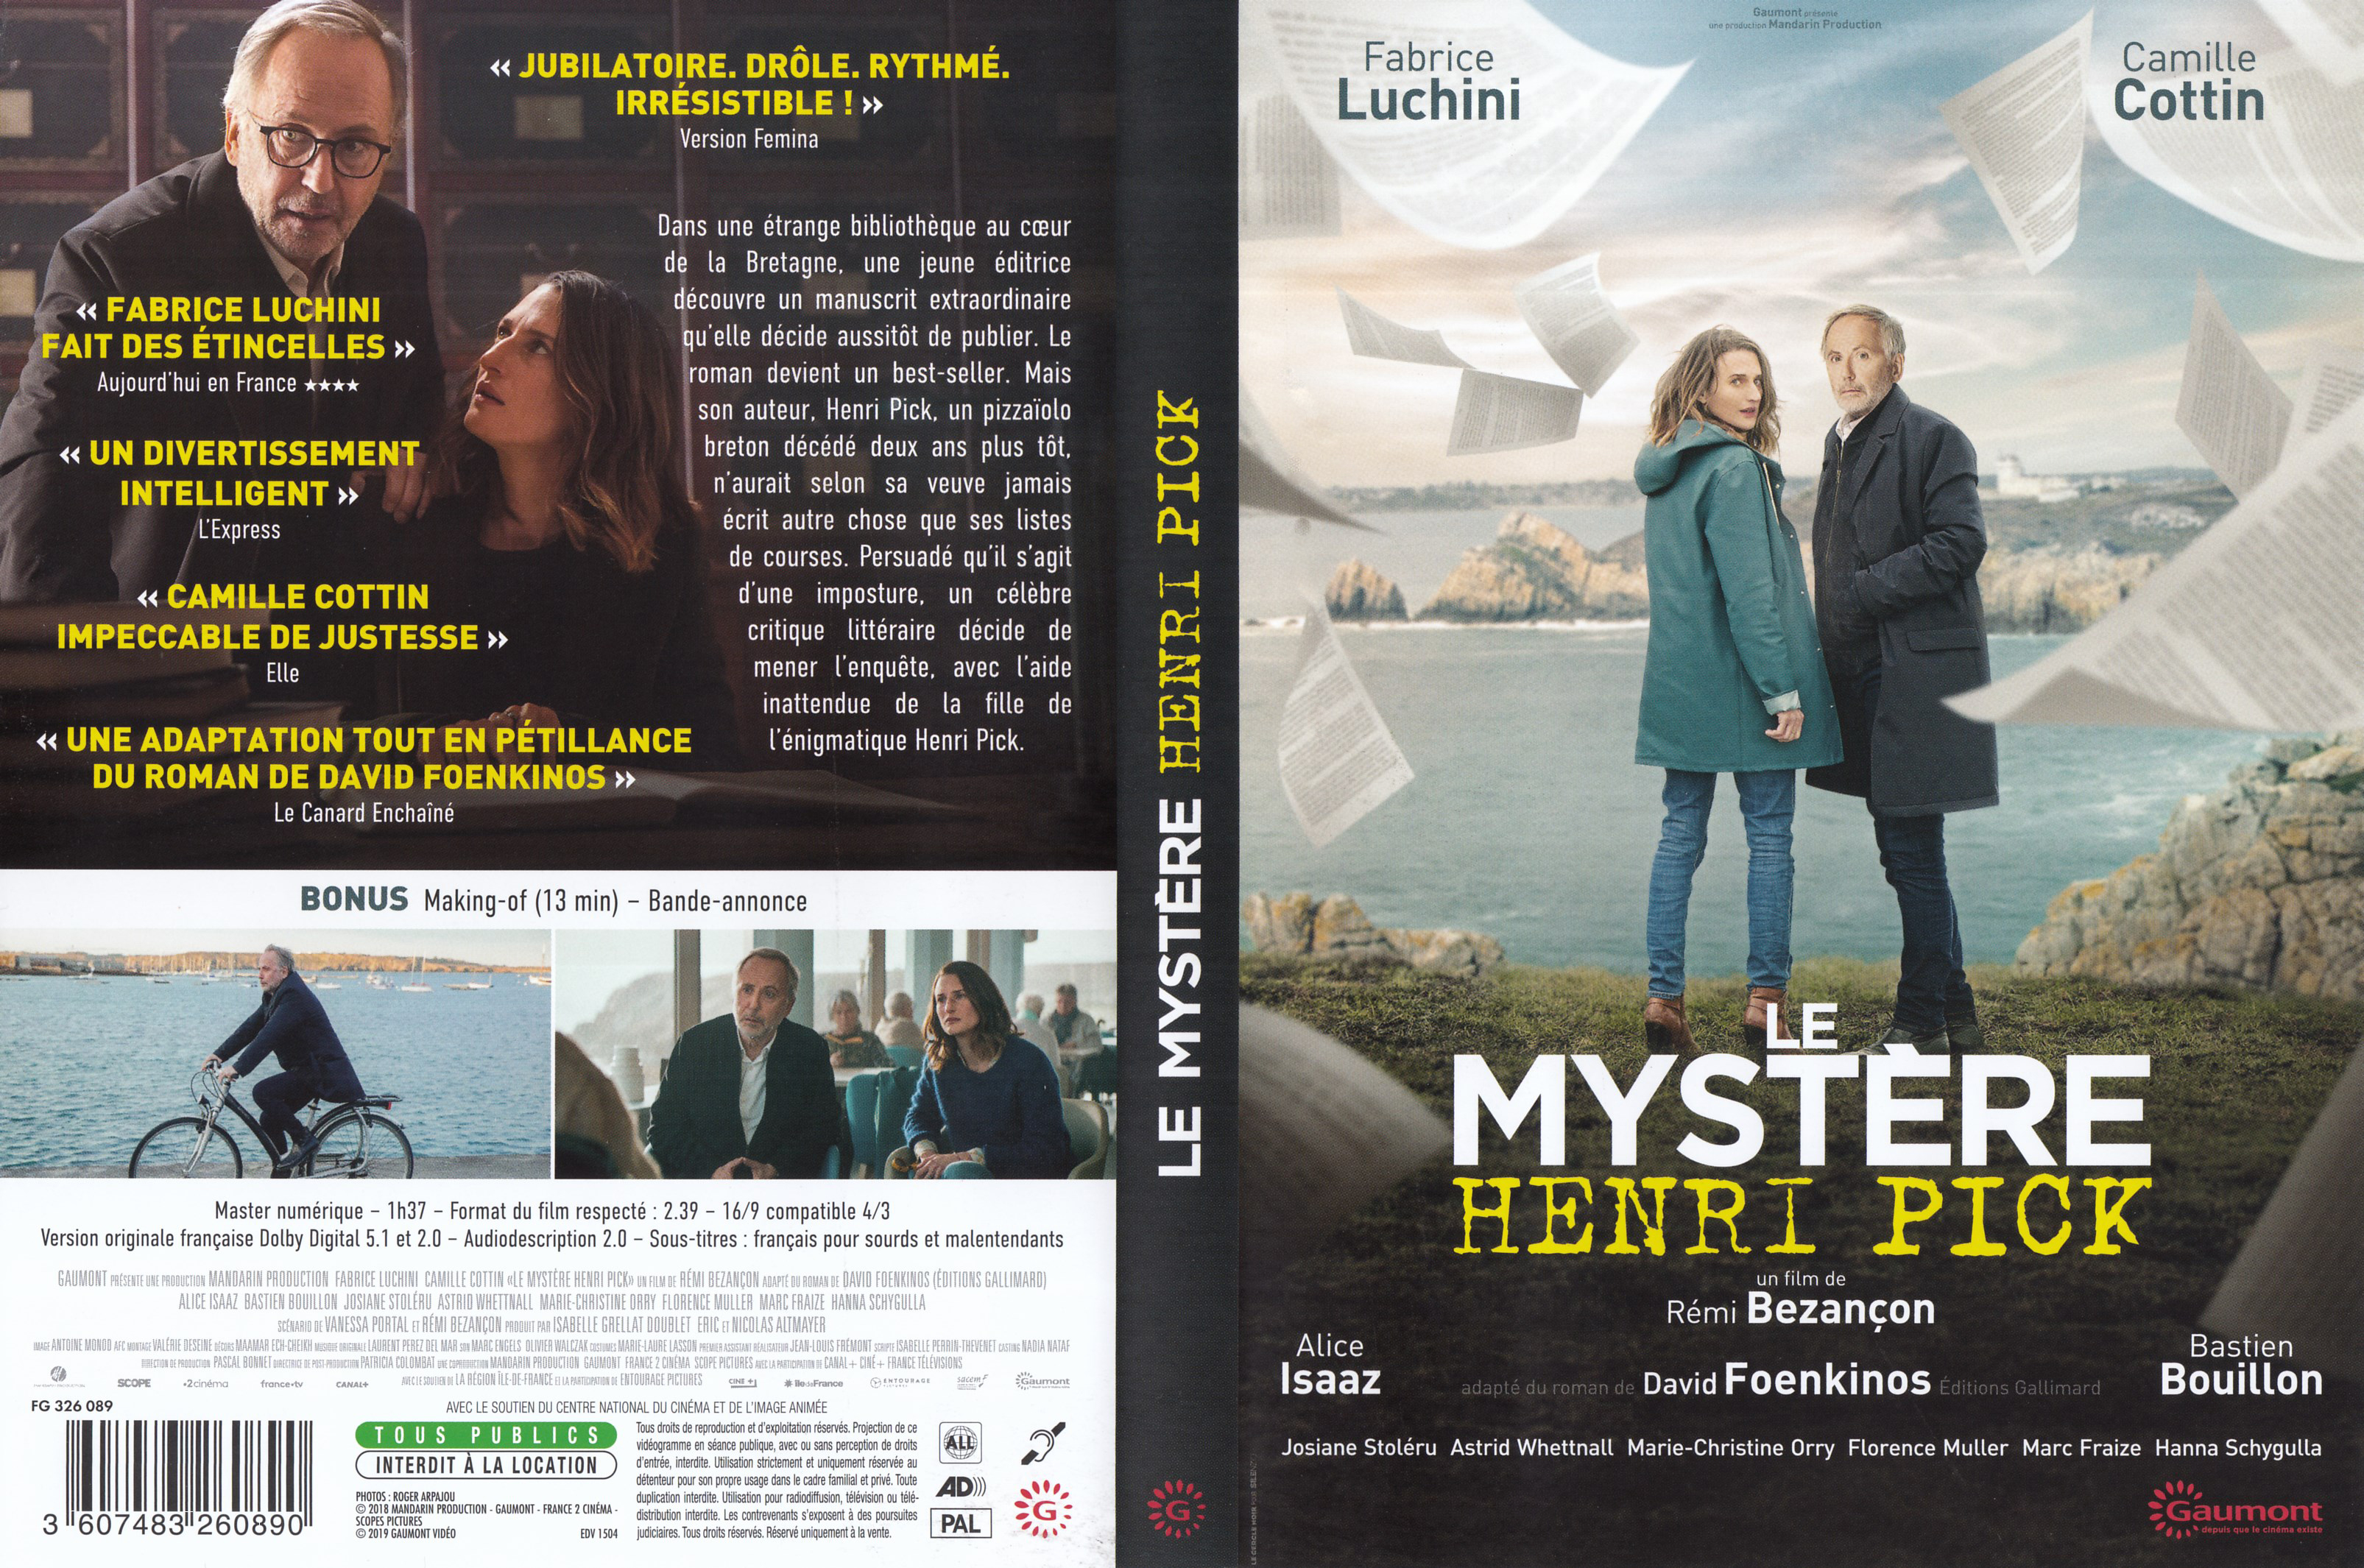 Jaquette DVD Le mystere Henri Pick